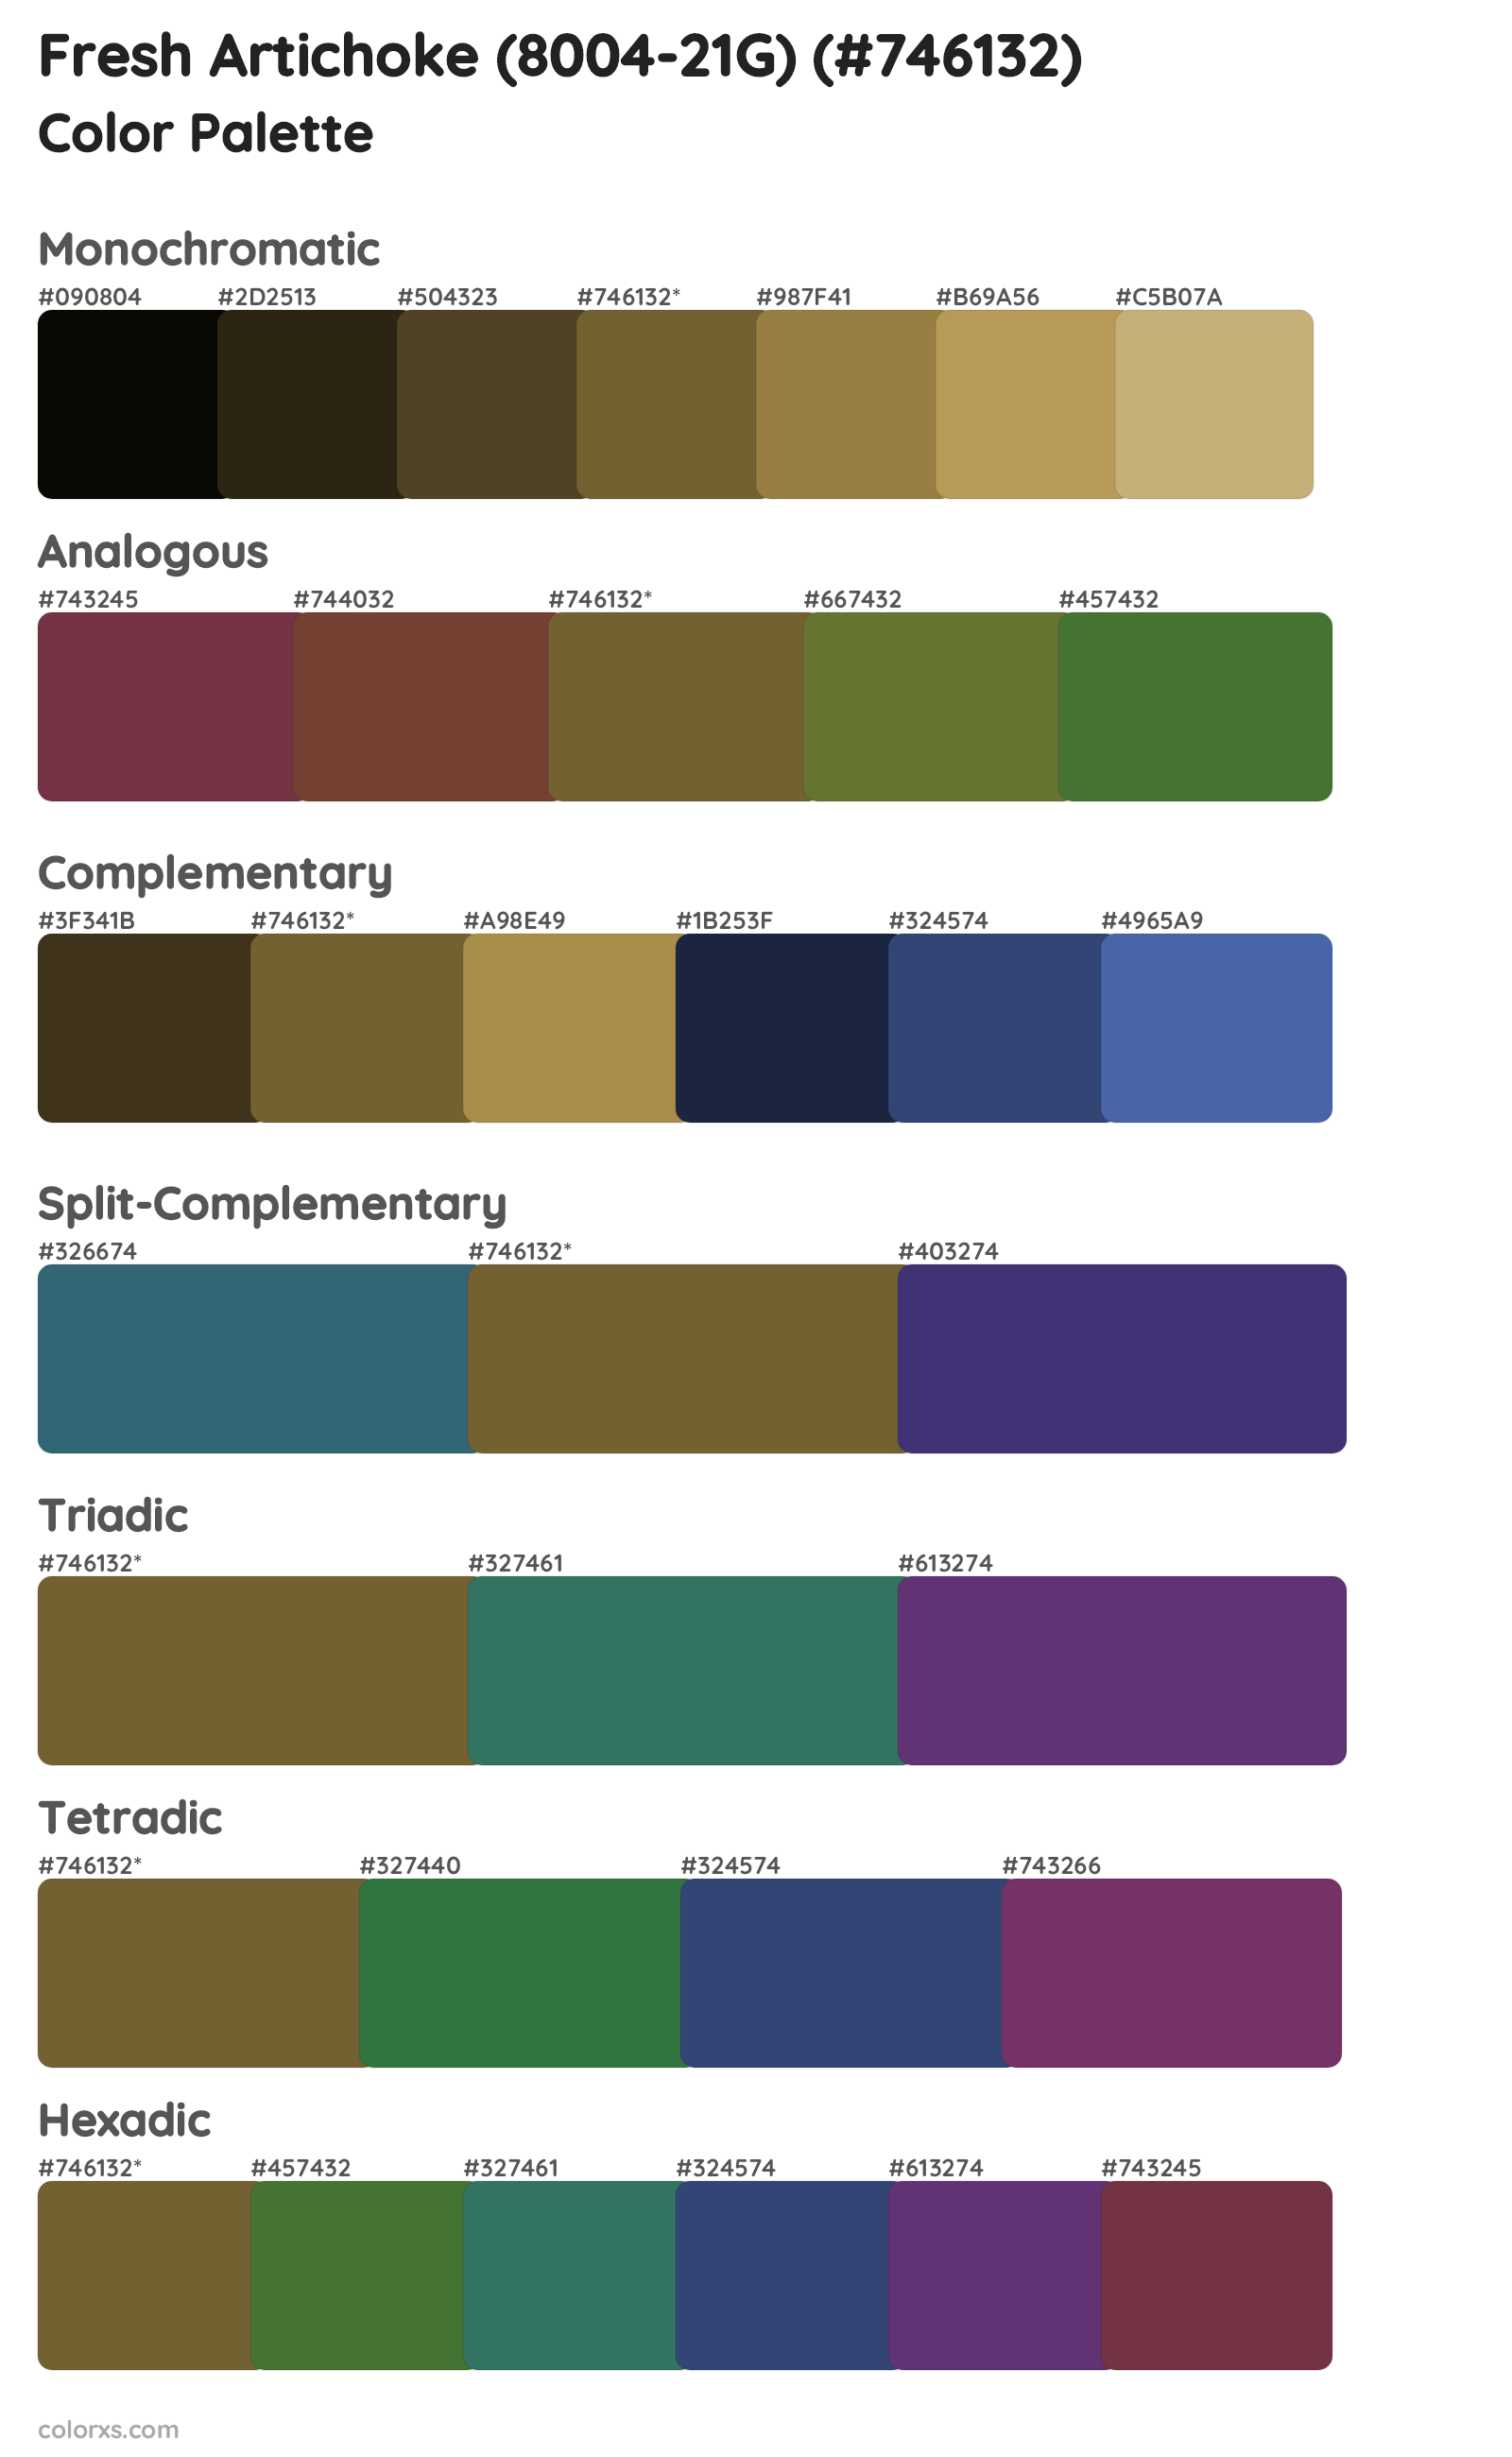 Fresh Artichoke (8004-21G) Color Scheme Palettes